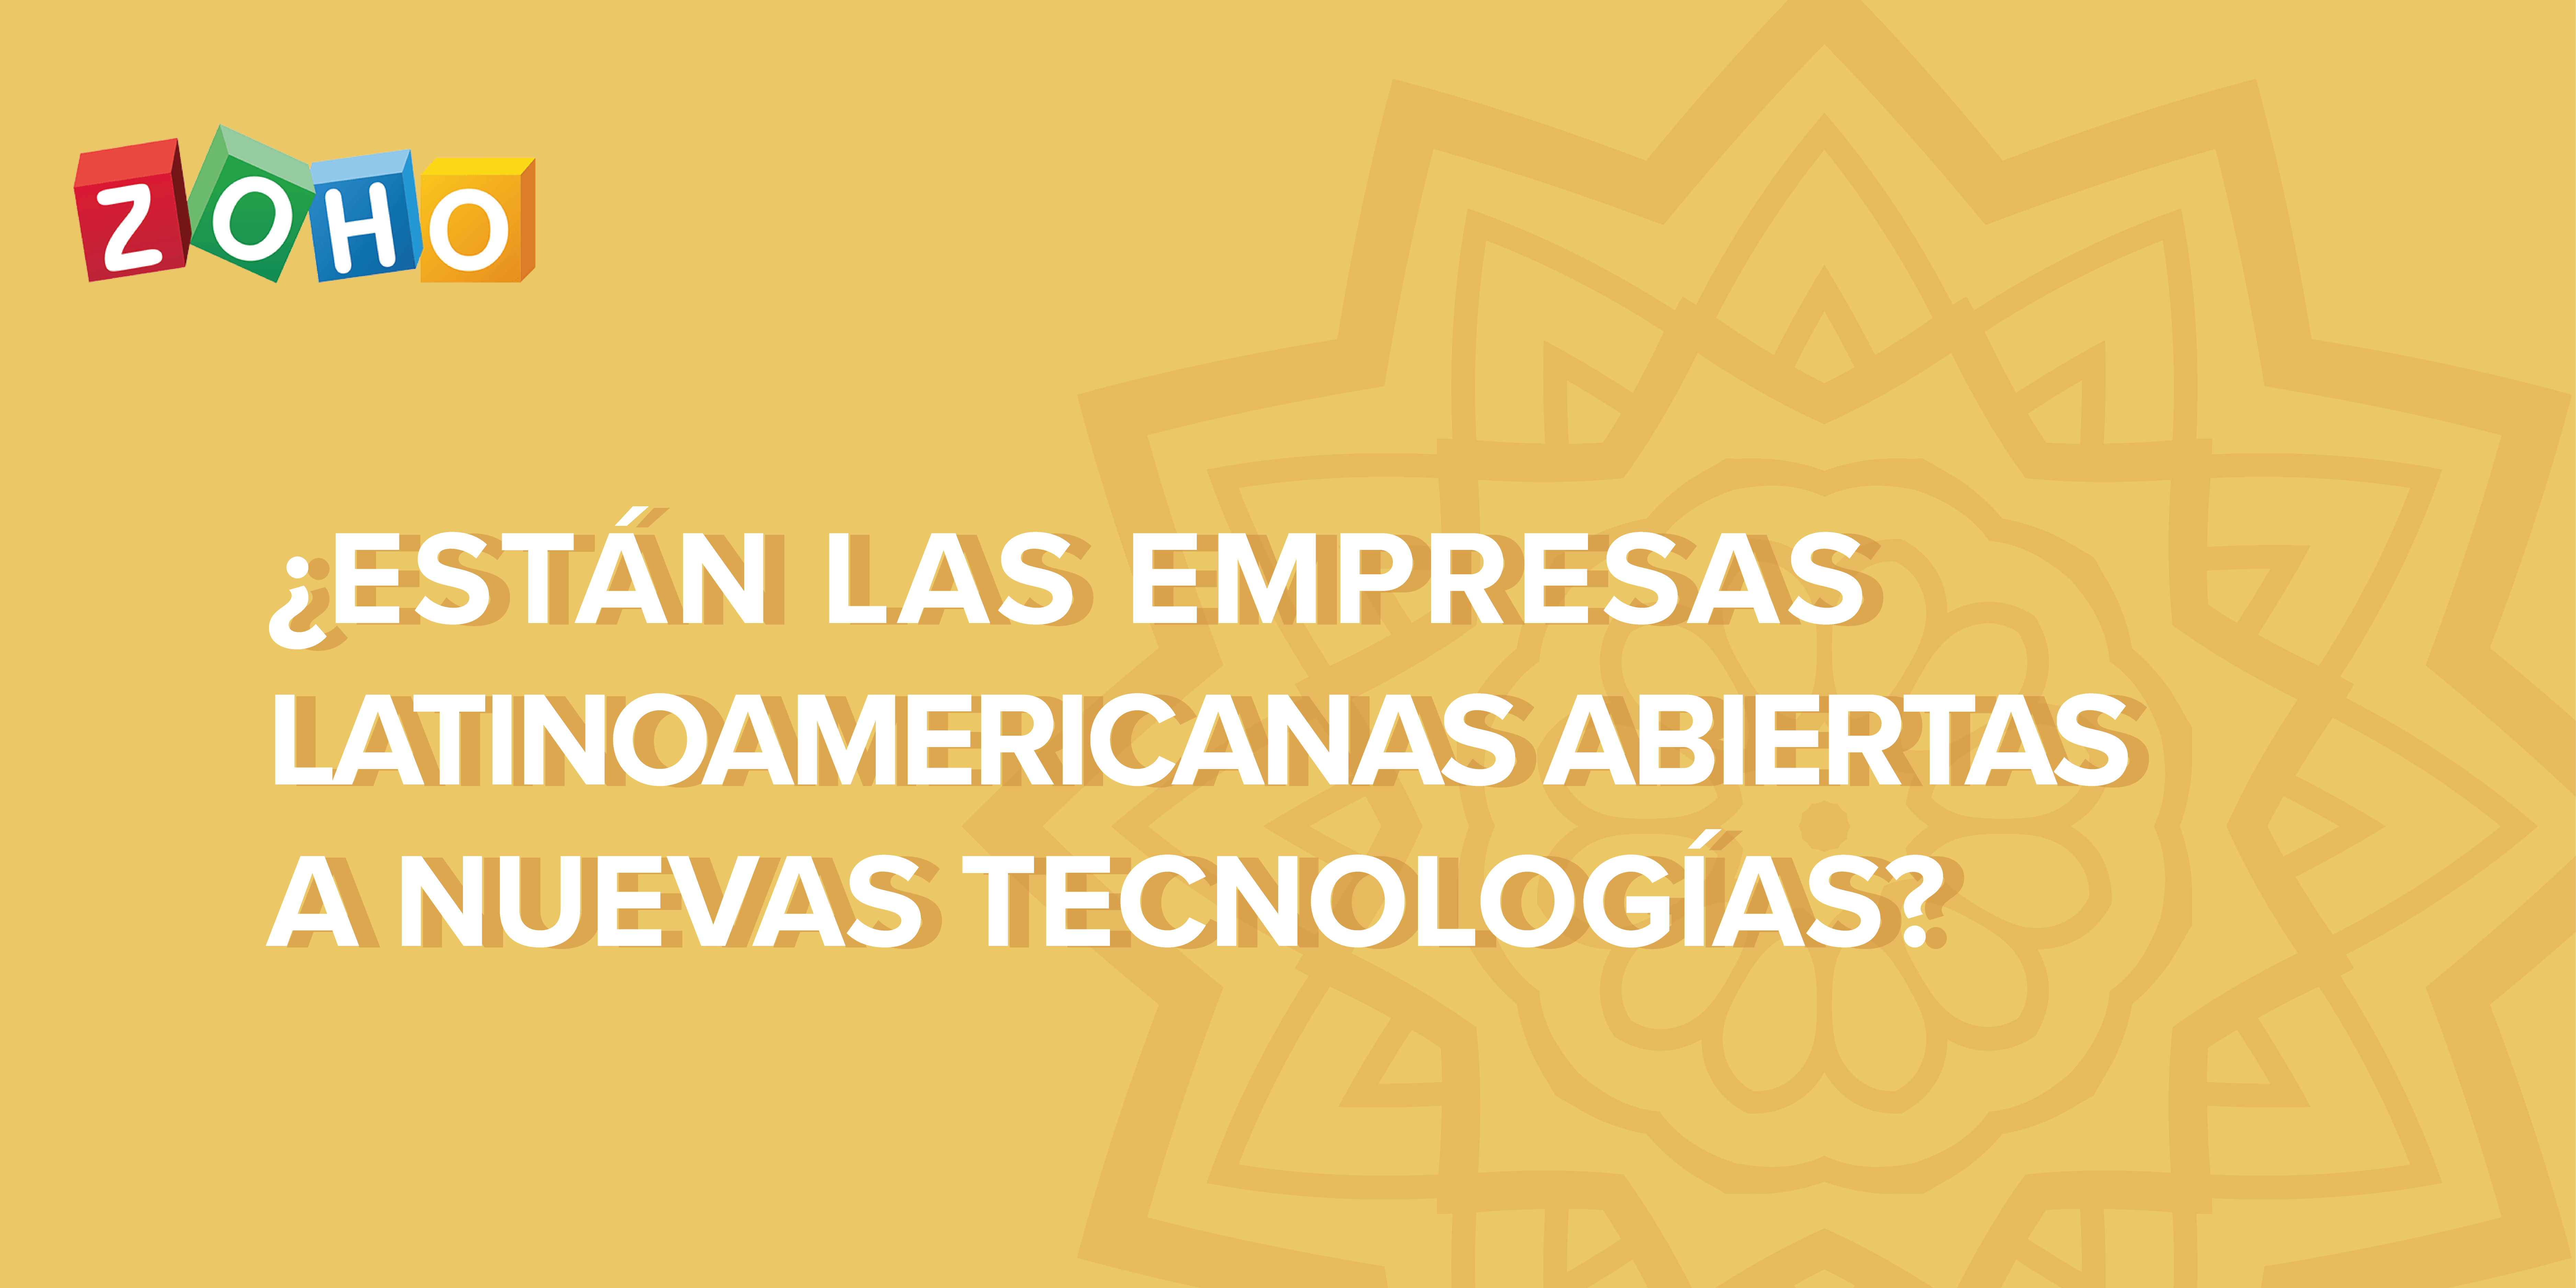 ¿Están las empresas latinoamericanas abiertas a nuevas tecnologías?